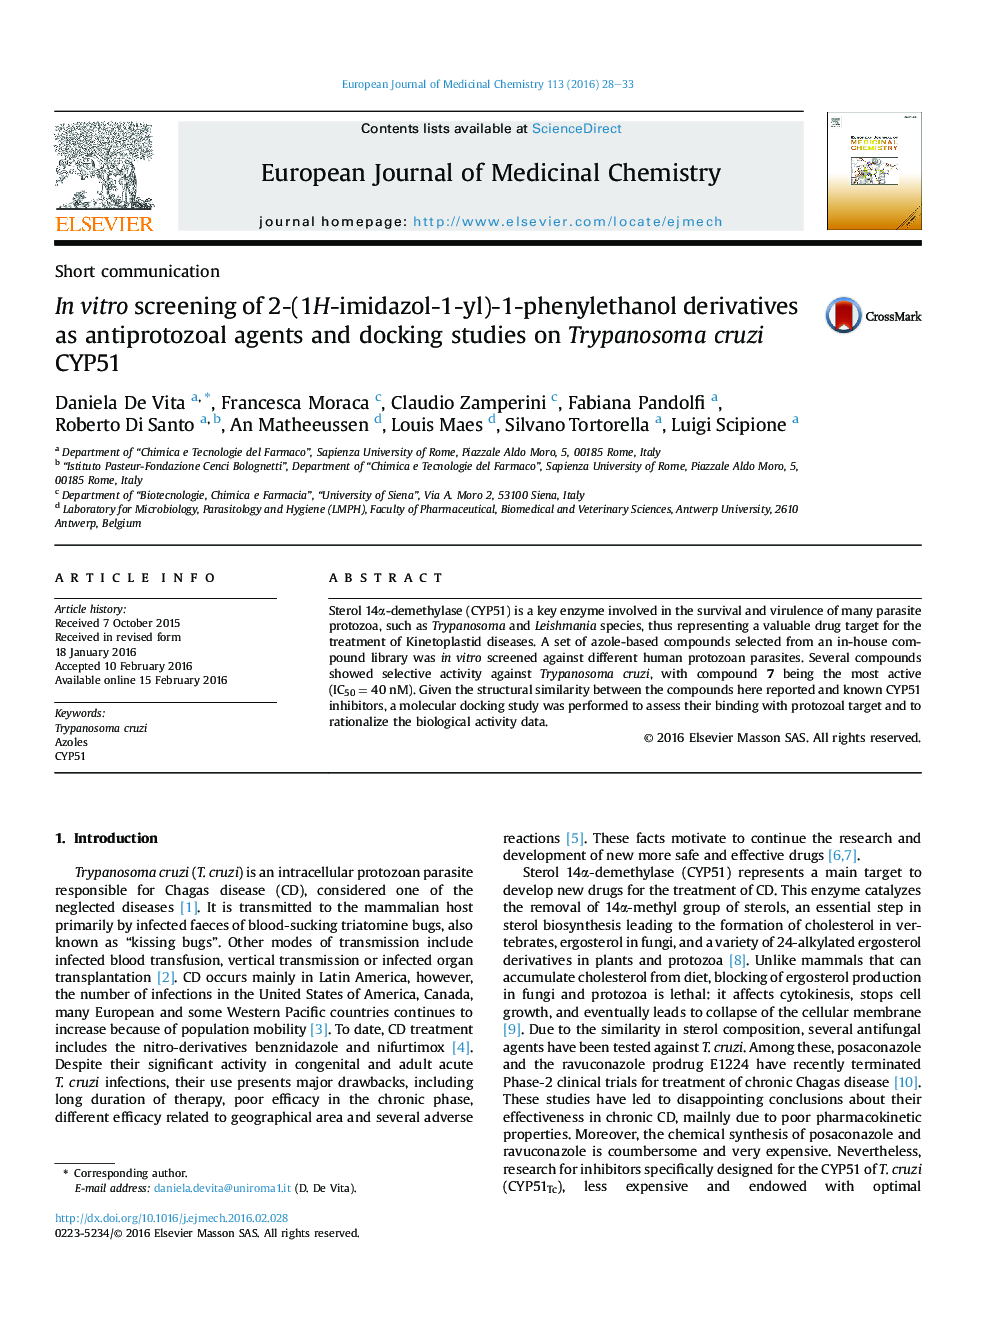 غربالگری آزمایشگاهی مشتقات 2- (1H-imidazol-1-yl) -1-phenylethanol به عنوان عوامل ضدپروتئوزوئیک و مطالعات داکینگ بر روی Trypanosoma cruzi CYP51